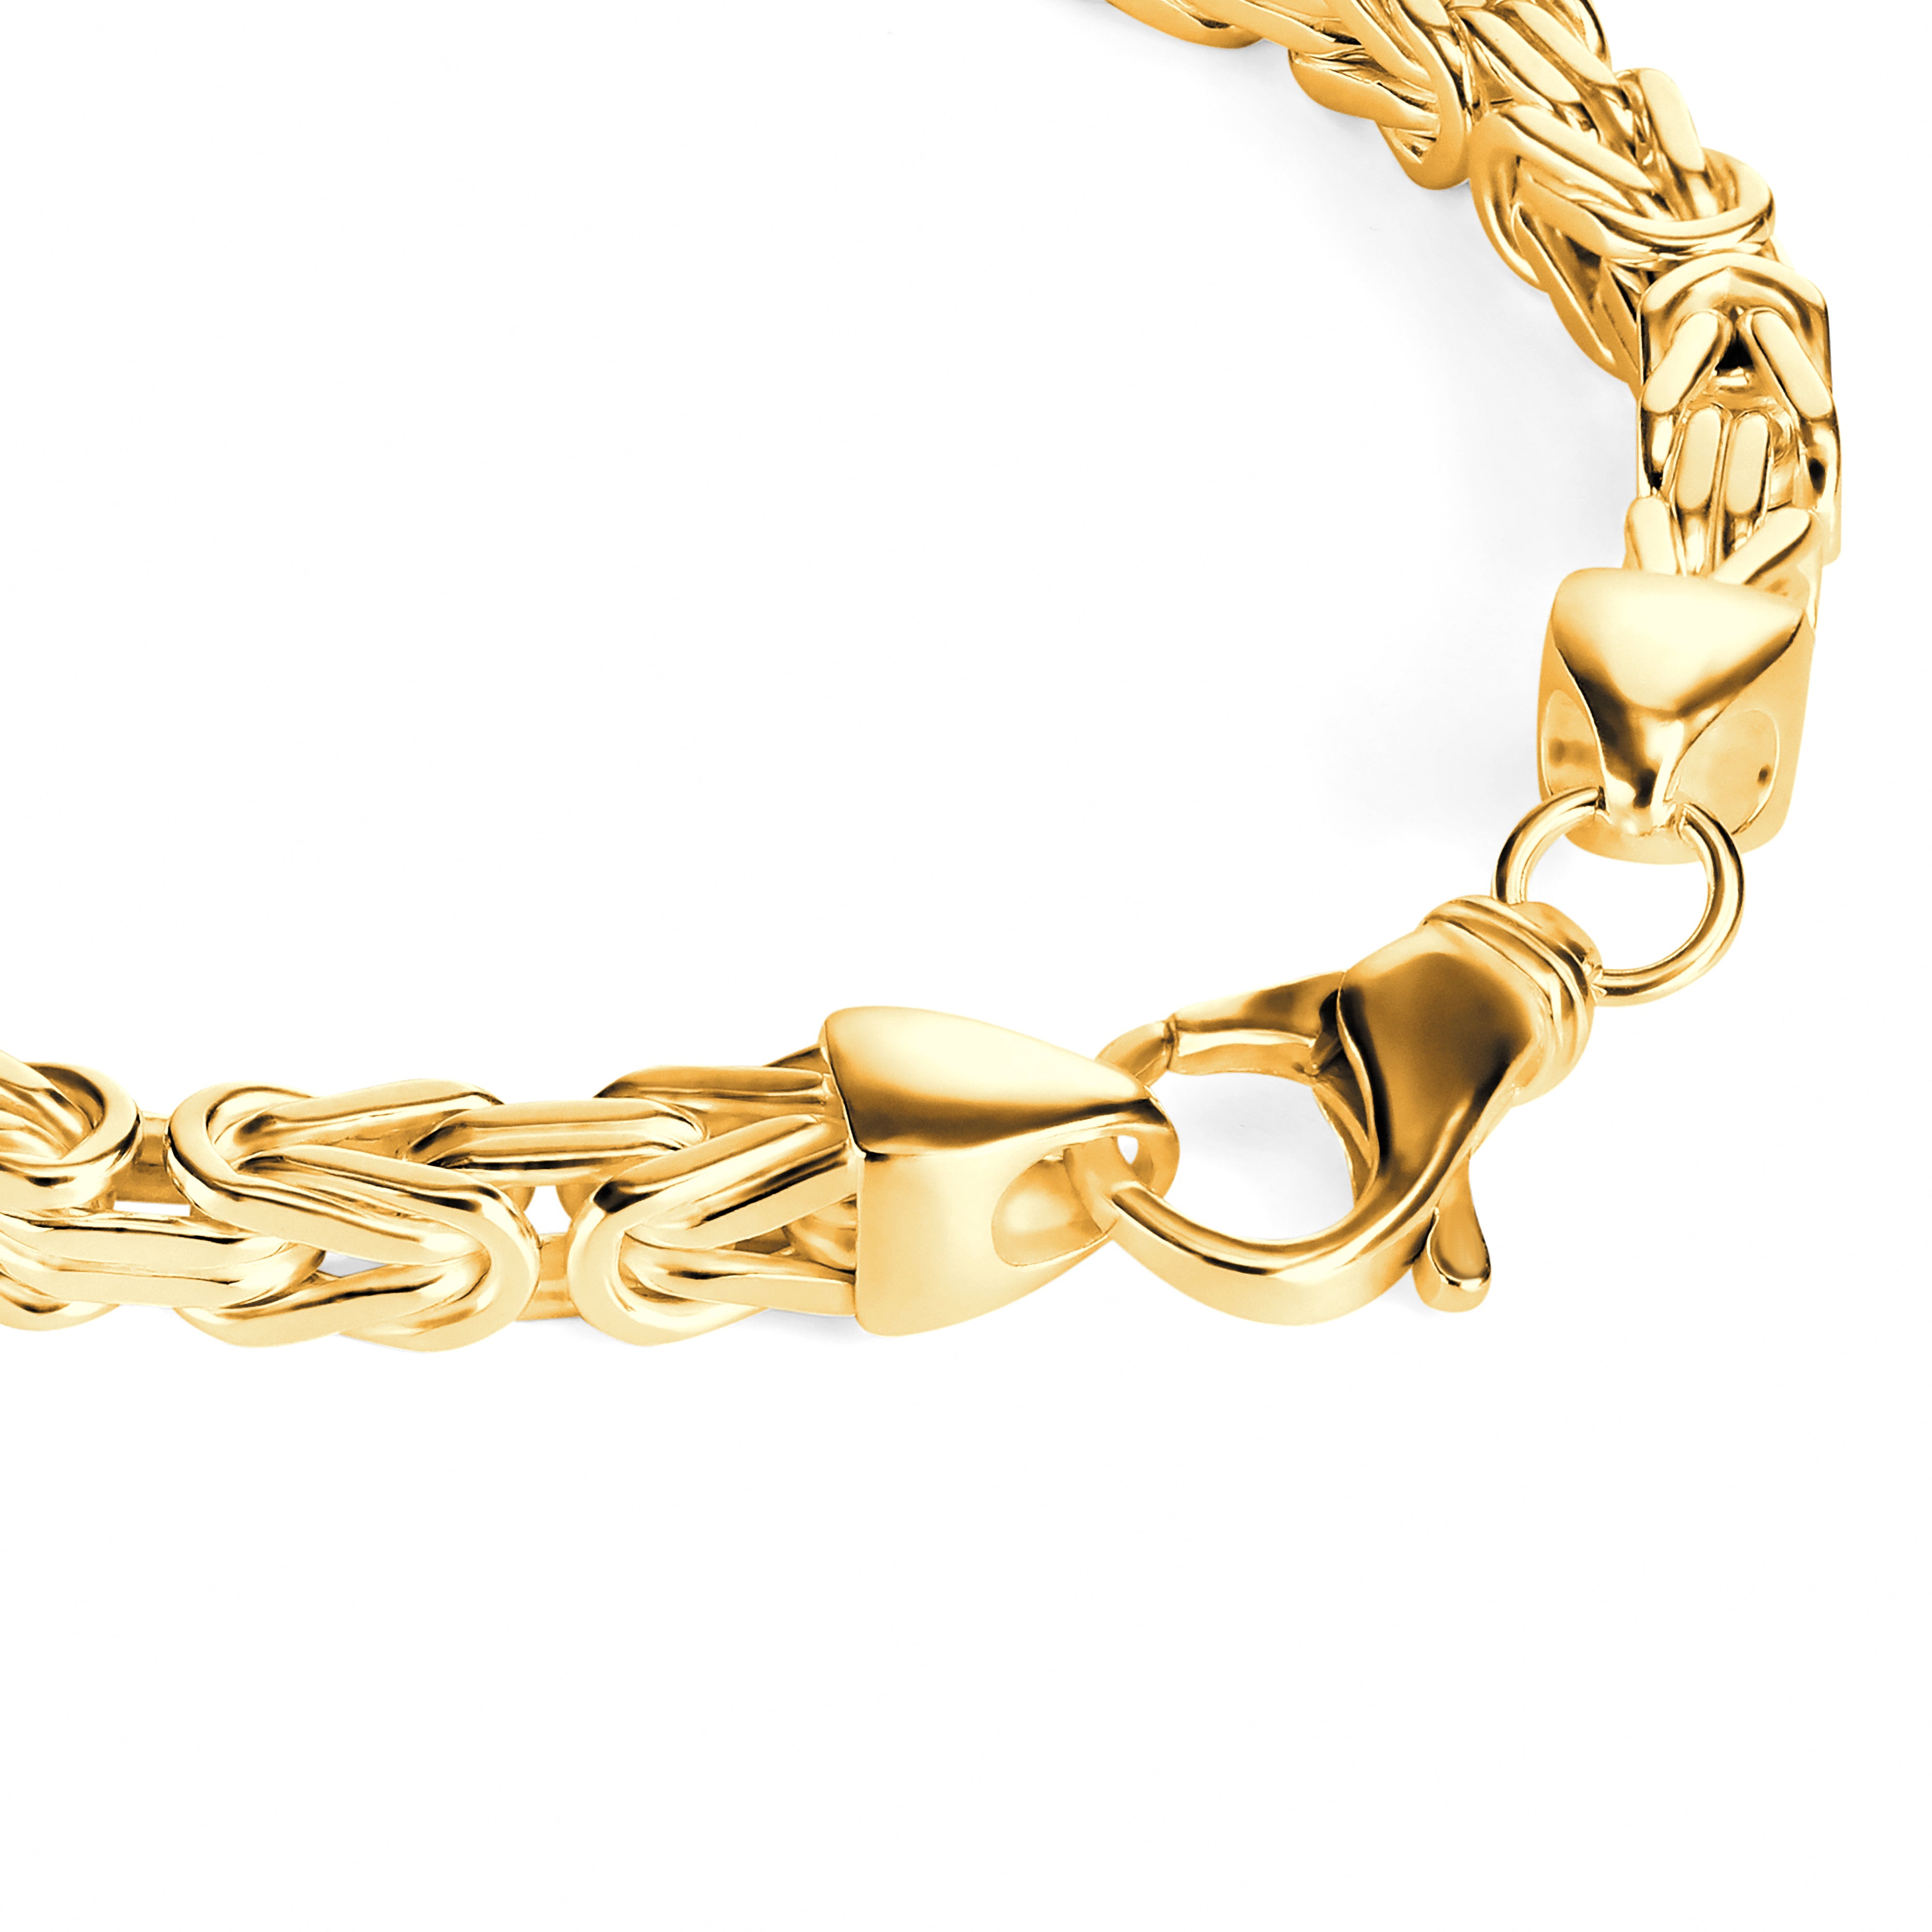 Byzantine bracelet 5.5mm wide - 585 gold